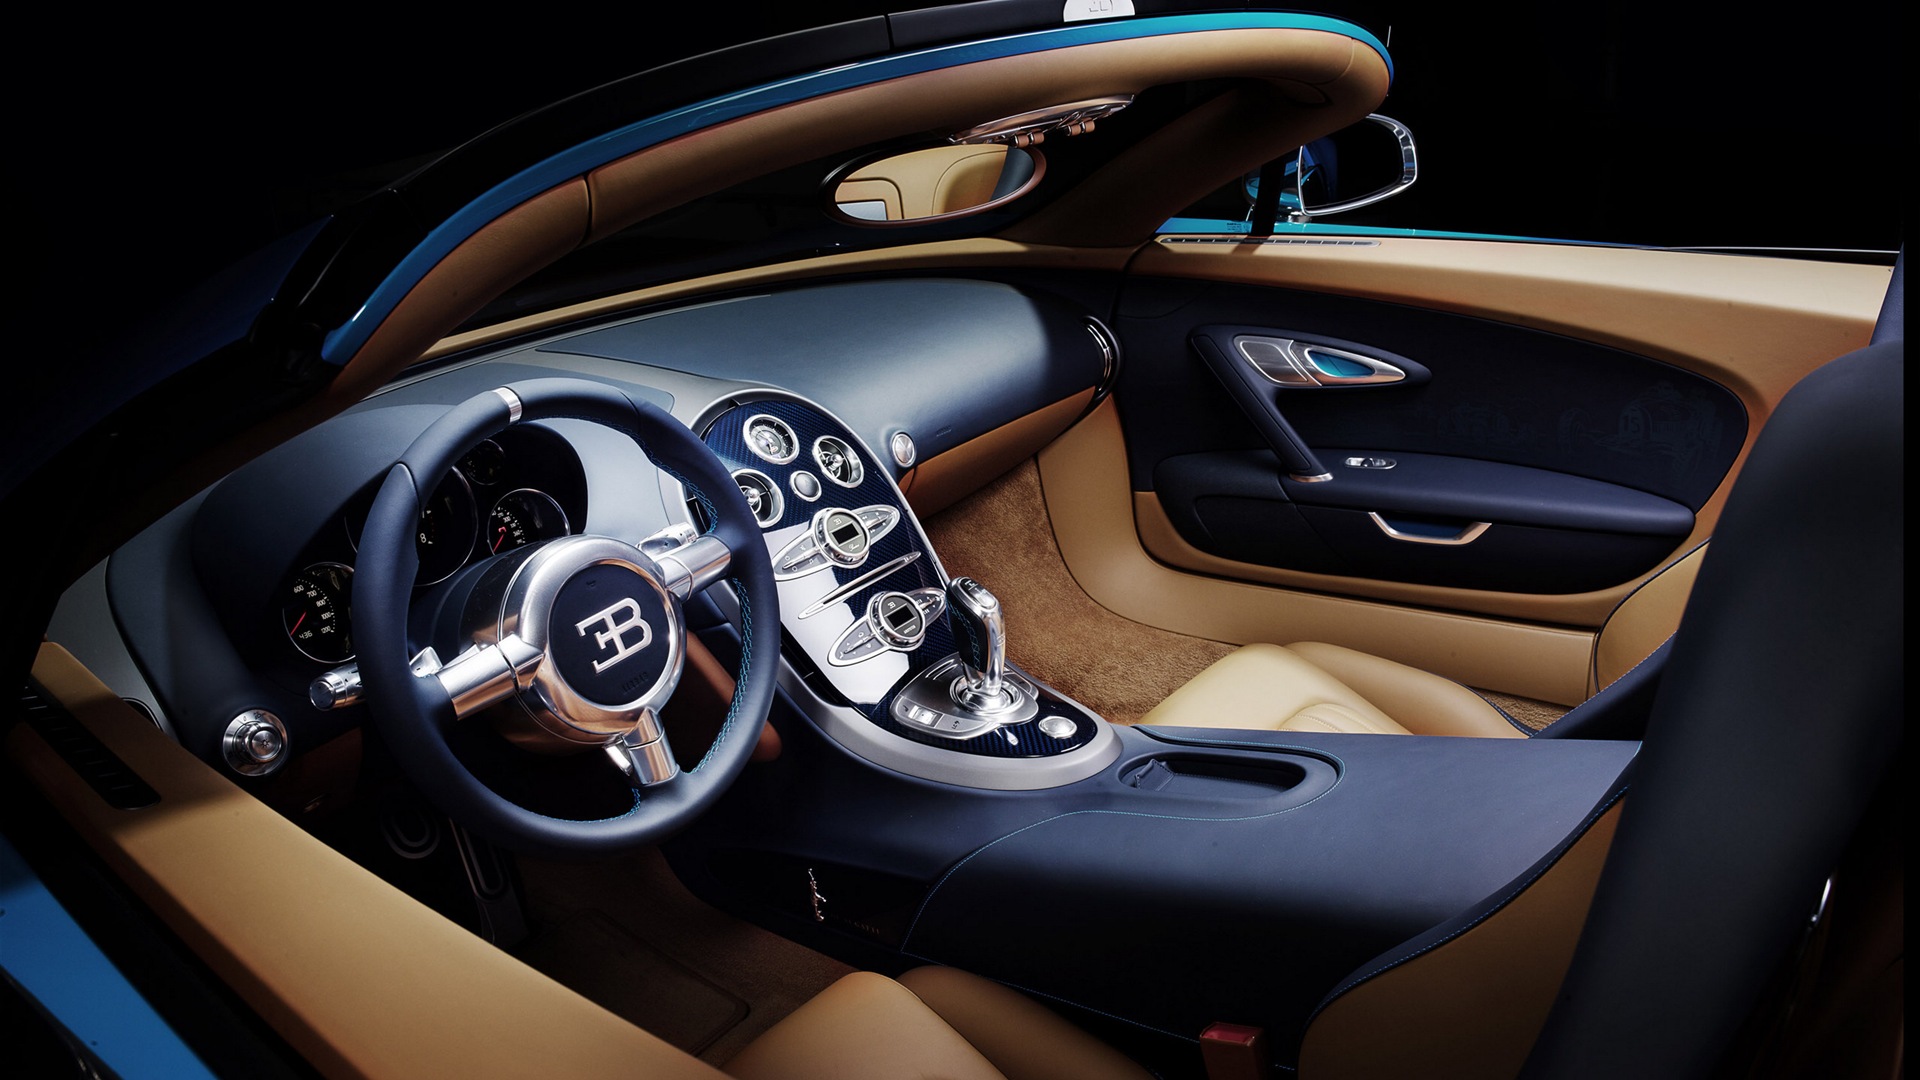 2013 Bugatti Veyron 16.4 Grand Sport Vitesse supercar fondos de pantalla de alta definición #7 - 1920x1080